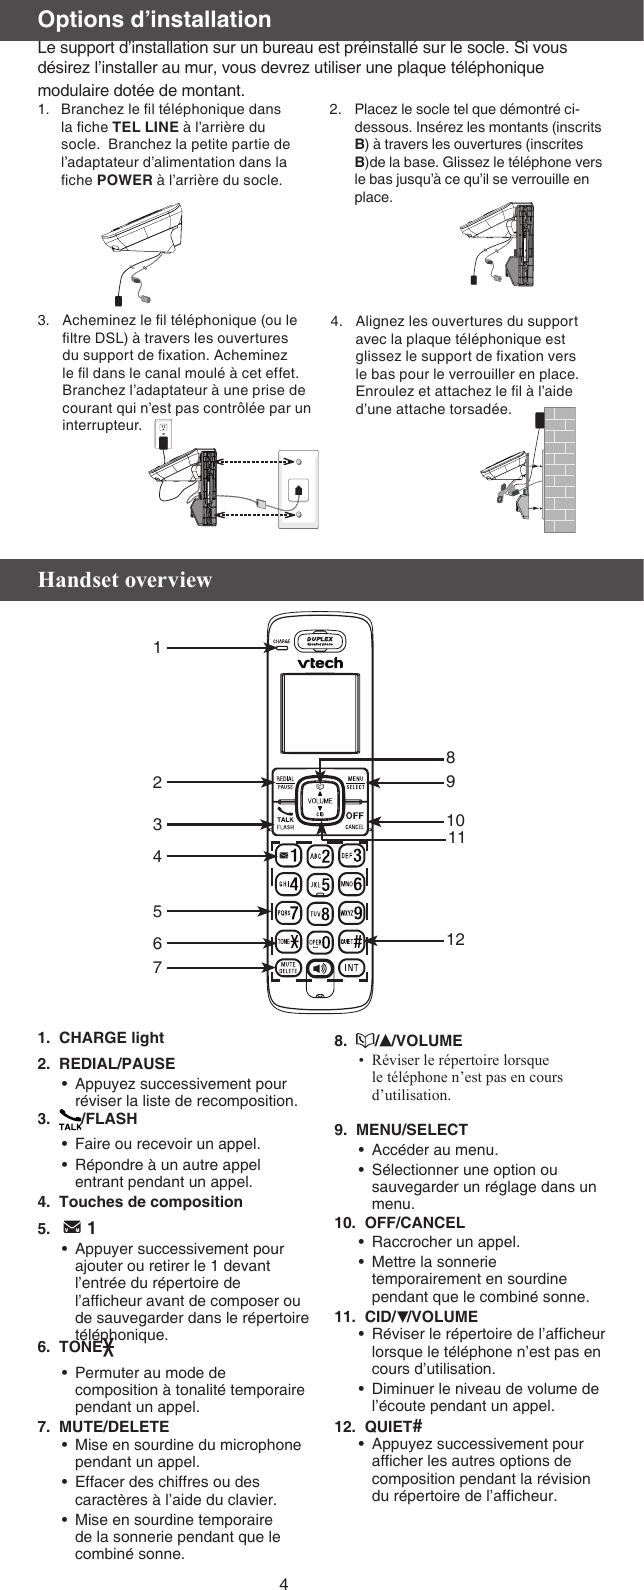 4Acheminez le l téléphonique (ou le ltre DSL) à travers les ouvertures du support de xation. Acheminez le l dans le canal moulé à cet effet. Branchez l’adaptateur à une prise de courant qui n’est pas contrôlée par un interrupteur.3. Alignez les ouvertures du support avec la plaque téléphonique est glissez le support de xation vers le bas pour le verrouiller en place. Enroulez et attachez le l à l’aide d’une attache torsadée.4.Options d’installationLe support d’installation sur un bureau est préinstallé sur le socle. Si vous désirez l’installer au mur, vous devrez utiliser une plaque téléphonique modulaire dotée de montant.Placez le socle tel que démontré ci-dessous. Insérez les montants (inscrits B) à travers les ouvertures (inscrites B)de la base. Glissez le téléphone vers le bas jusqu’à ce qu’il se verrouille en place.2.Branchez le l téléphonique dans la che TEL LINE à l’arrière du socle.  Branchez la petite partie de l’adaptateur d’alimentation dans la che POWER à l’arrière du socle. 1.Handset overview1.  CHARGE light2.  REDIAL/PAUSEAppuyez successivement pour réviser la liste de recomposition.3.   /FLASHFaire ou recevoir un appel.Répondre à un autre appel entrant pendant un appel.4.  Touches de composition5.     1Appuyer successivement pour ajouter ou retirer le 1 devant l’entrée du répertoire de l’afcheur avant de composer ou de sauvegarder dans le répertoire téléphonique.6.  TONEPermuter au mode de composition à tonalité temporaire pendant un appel.7.  MUTE/DELETEMise en sourdine du microphone pendant un appel.Effacer des chiffres ou des caractères à l’aide du clavier.Mise en sourdine temporaire de la sonnerie pendant que le combiné sonne.••••••••8.   / /VOLUMERéviser le répertoire lorsque le téléphone n’est pas en cours d’utilisation.9.  MENU/SELECTAccéder au menu.Sélectionner une option ou sauvegarder un réglage dans un menu. 10.  OFF/CANCELRaccrocher un appel.Mettre la sonnerie temporairement en sourdine pendant que le combiné sonne.11.  CID/ /VOLUMERéviser le répertoire de l’afcheur lorsque le téléphone n’est pas en cours d’utilisation.Diminuer le niveau de volume de l’écoute pendant un appel.12.  QUIET# Appuyez successivement pour afcher les autres options de composition pendant la révision du répertoire de l’afcheur.••••••••910121234567811